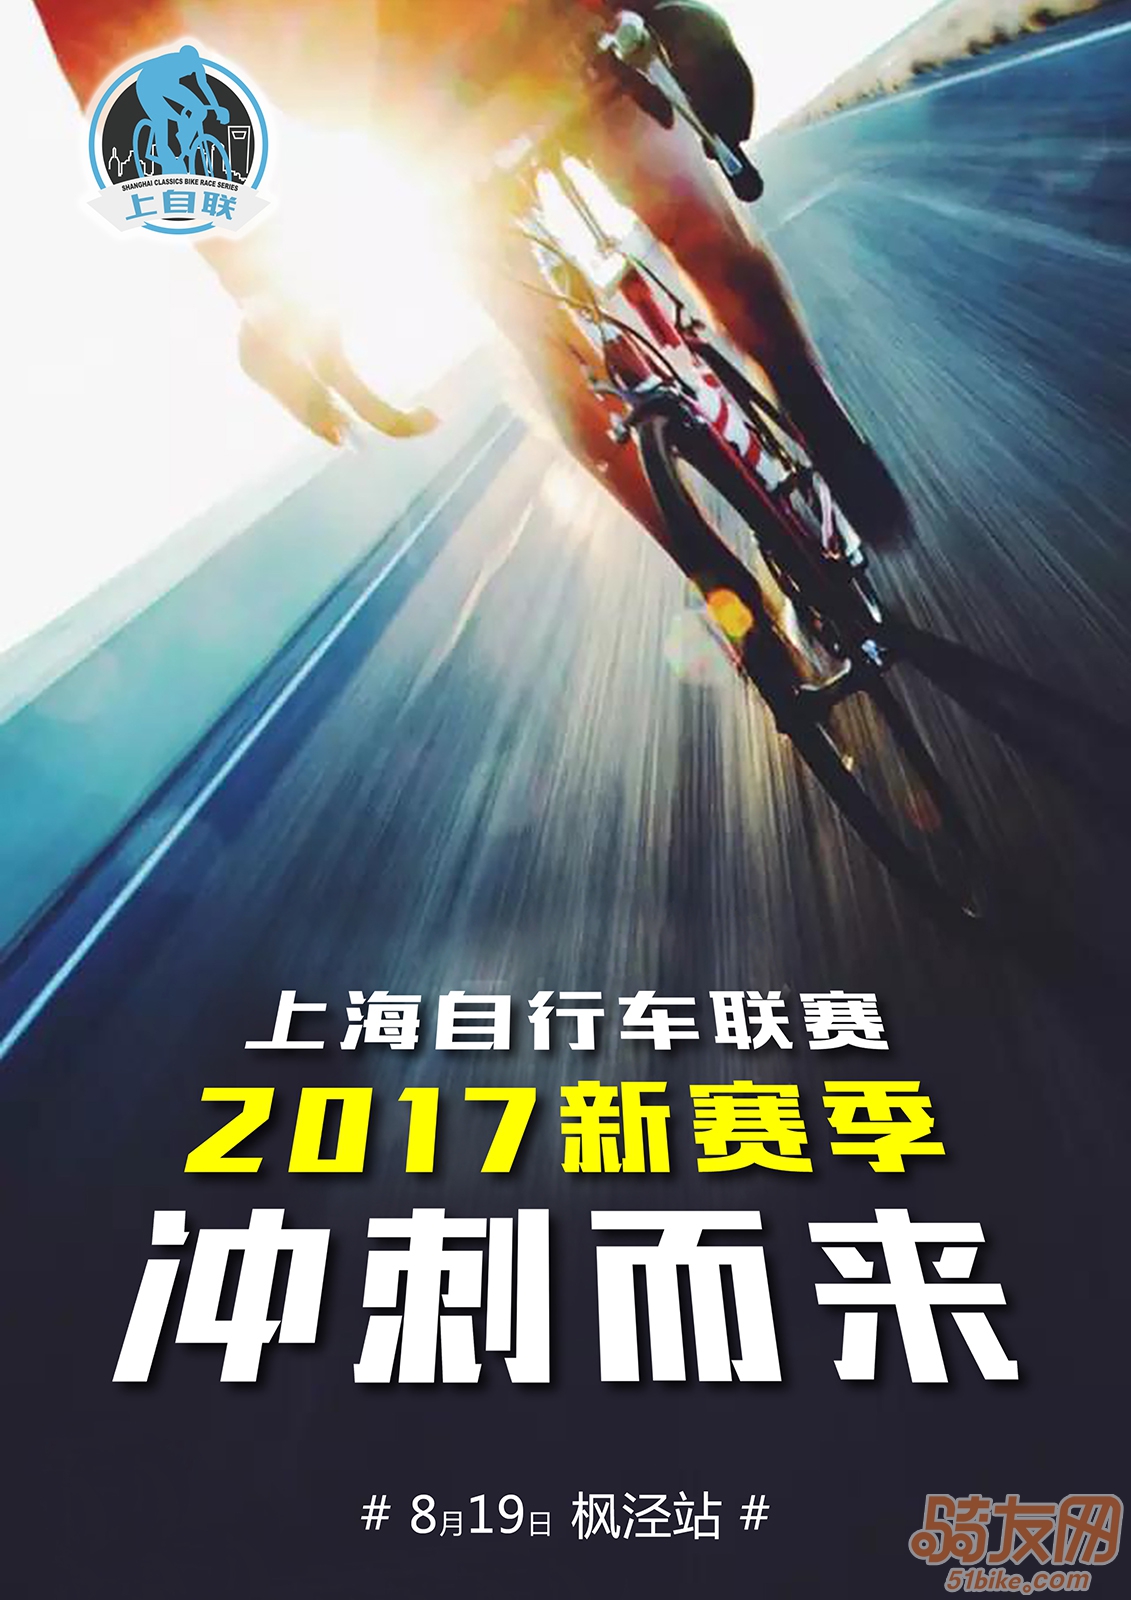 2017枫泾黄桃节暨上海自行车联赛上海枫泾站公告